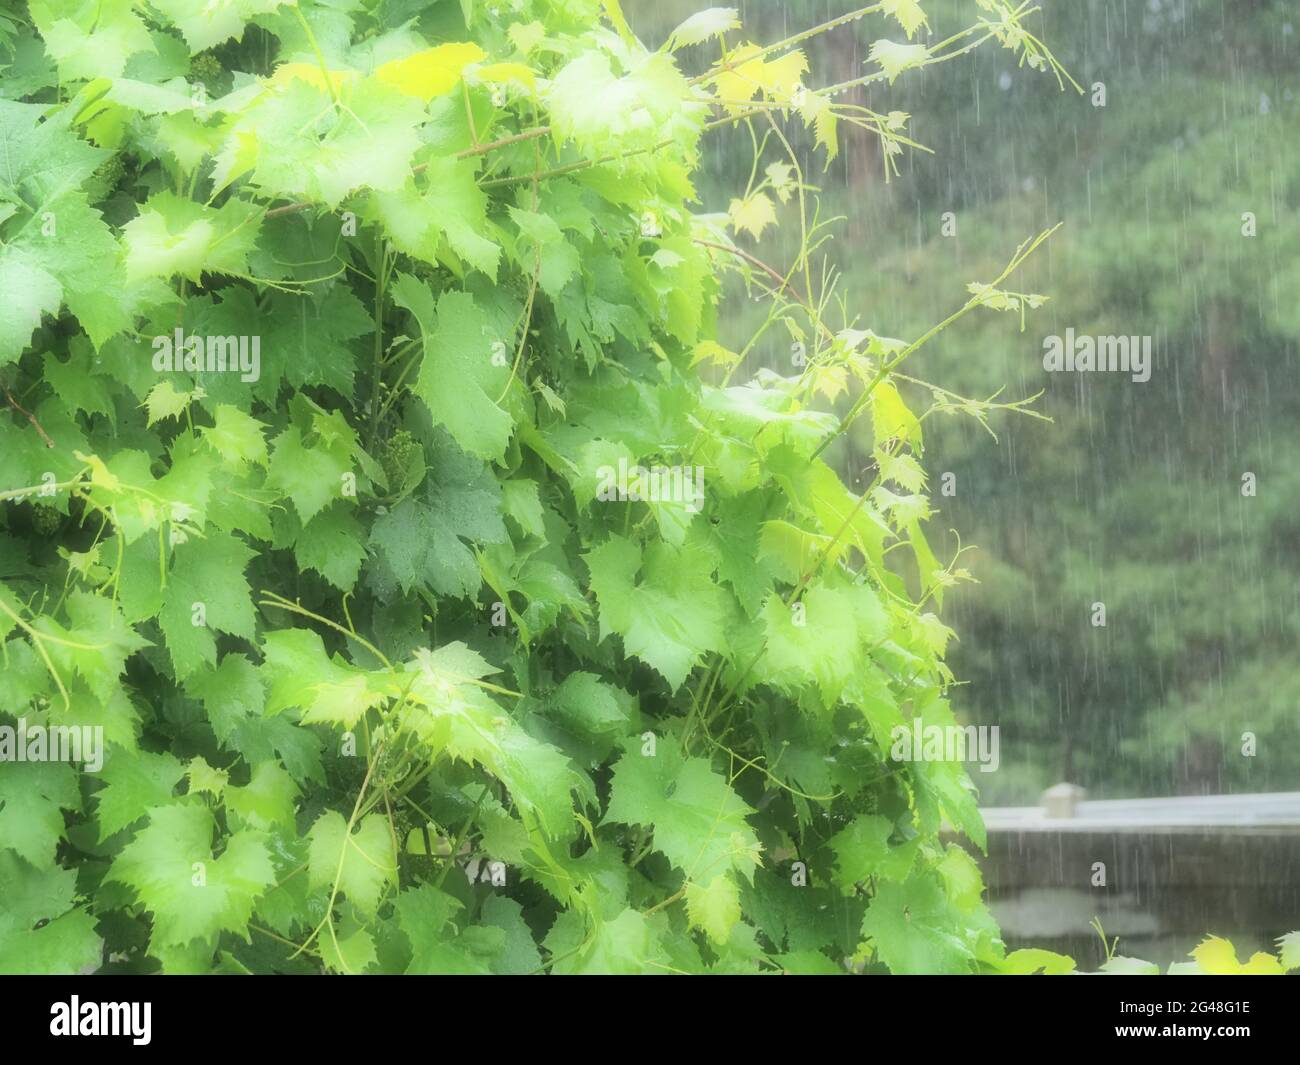 Gros plan de quelques vignes lors d'une forte averse de pluie Banque D'Images